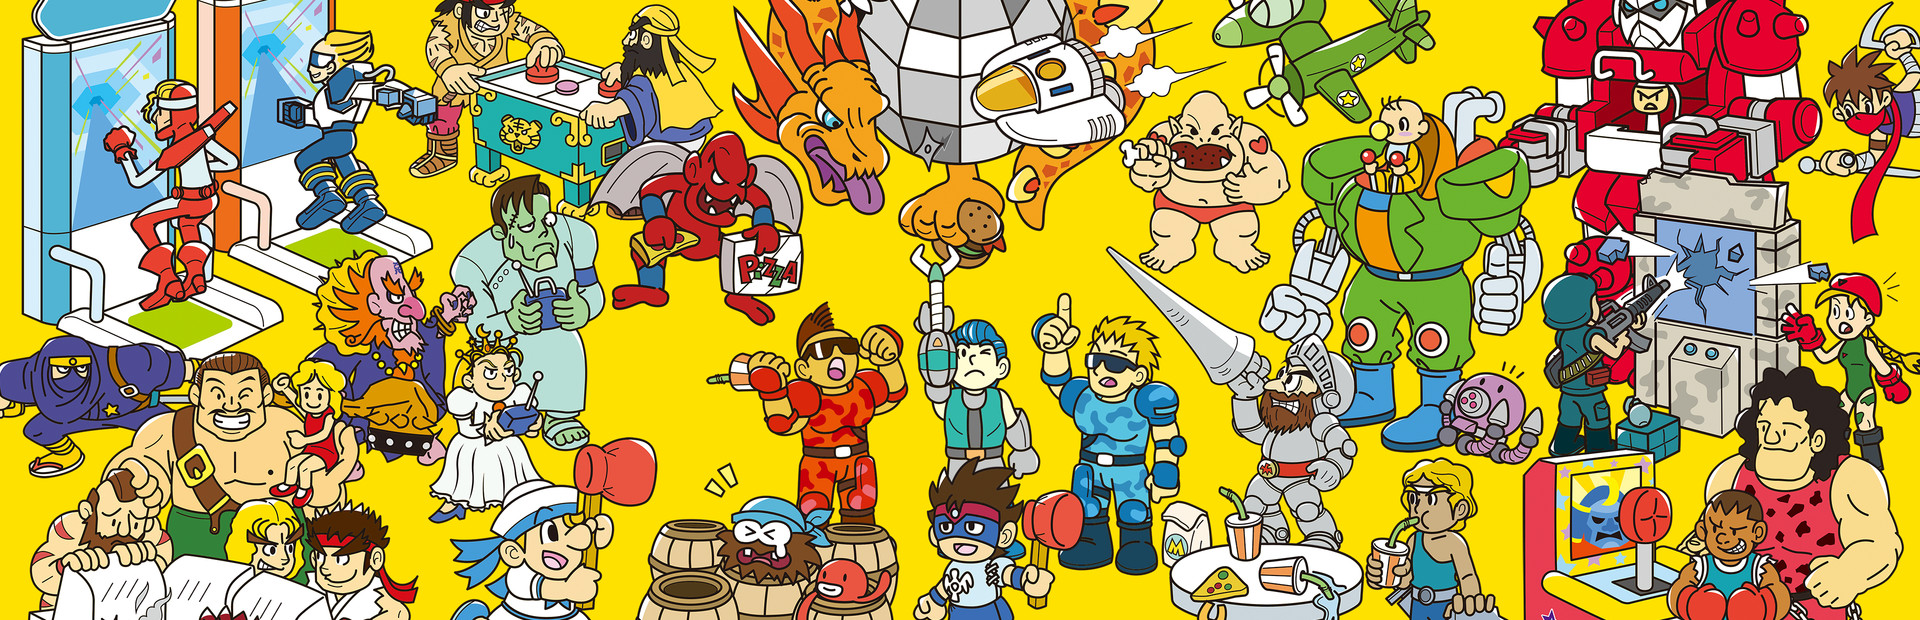 Capcom Arcade Stadium cover image